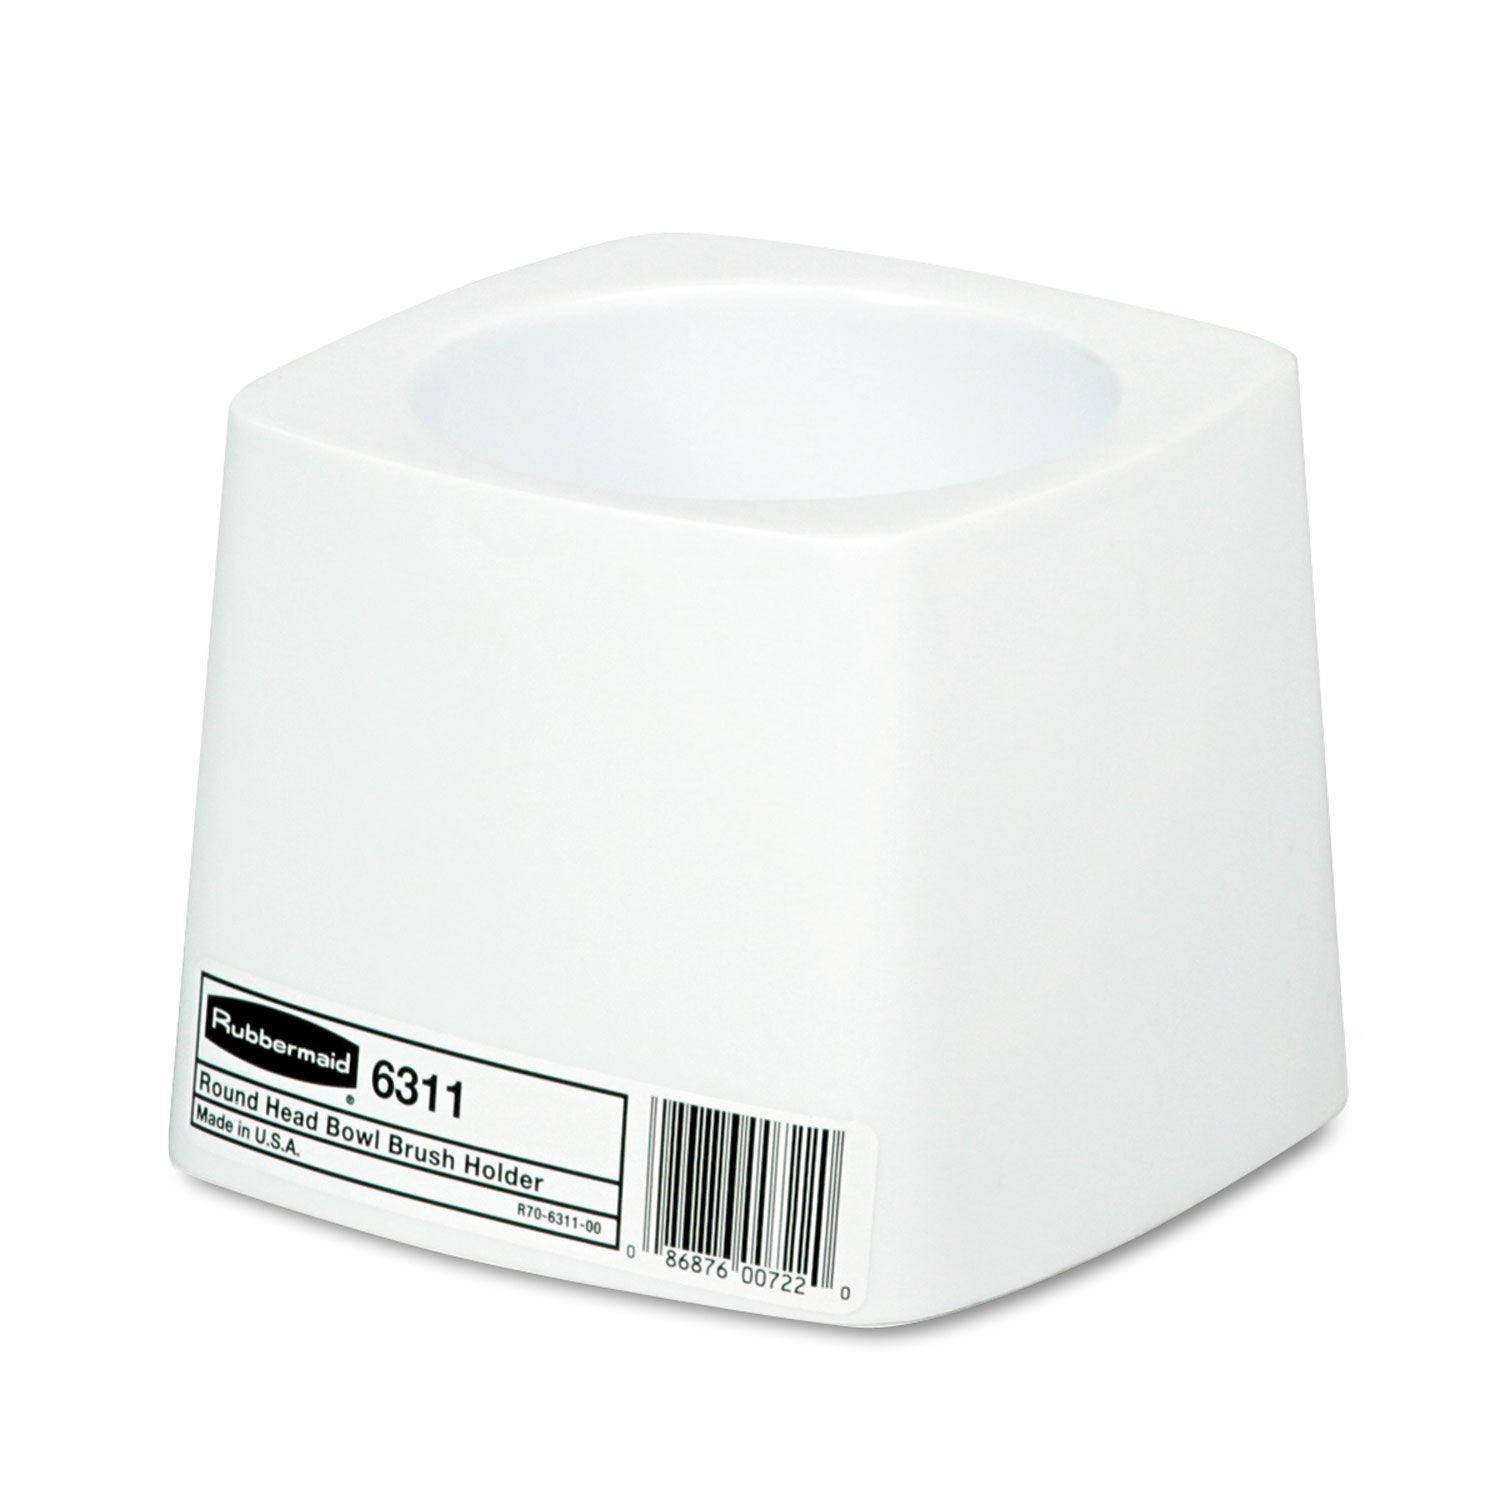 Commercial-Grade Toilet Bowl Brush Holder White